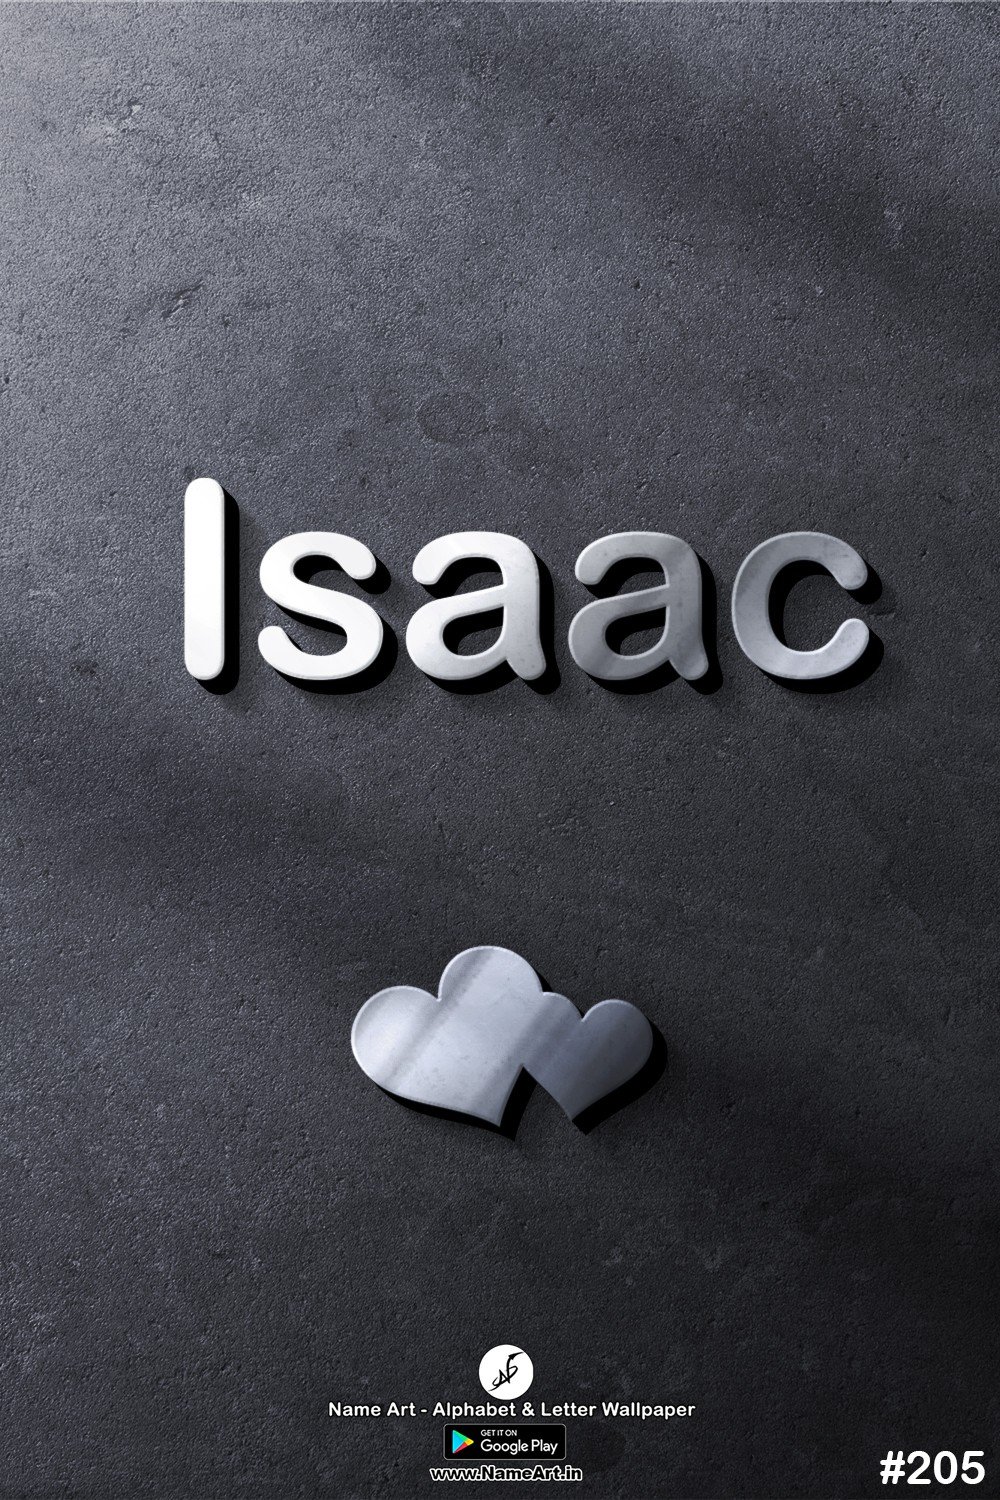 Isaac | Whatsapp Status Isaac | Happy Birthday Isaac !! | New Whatsapp Status Isaac Images |